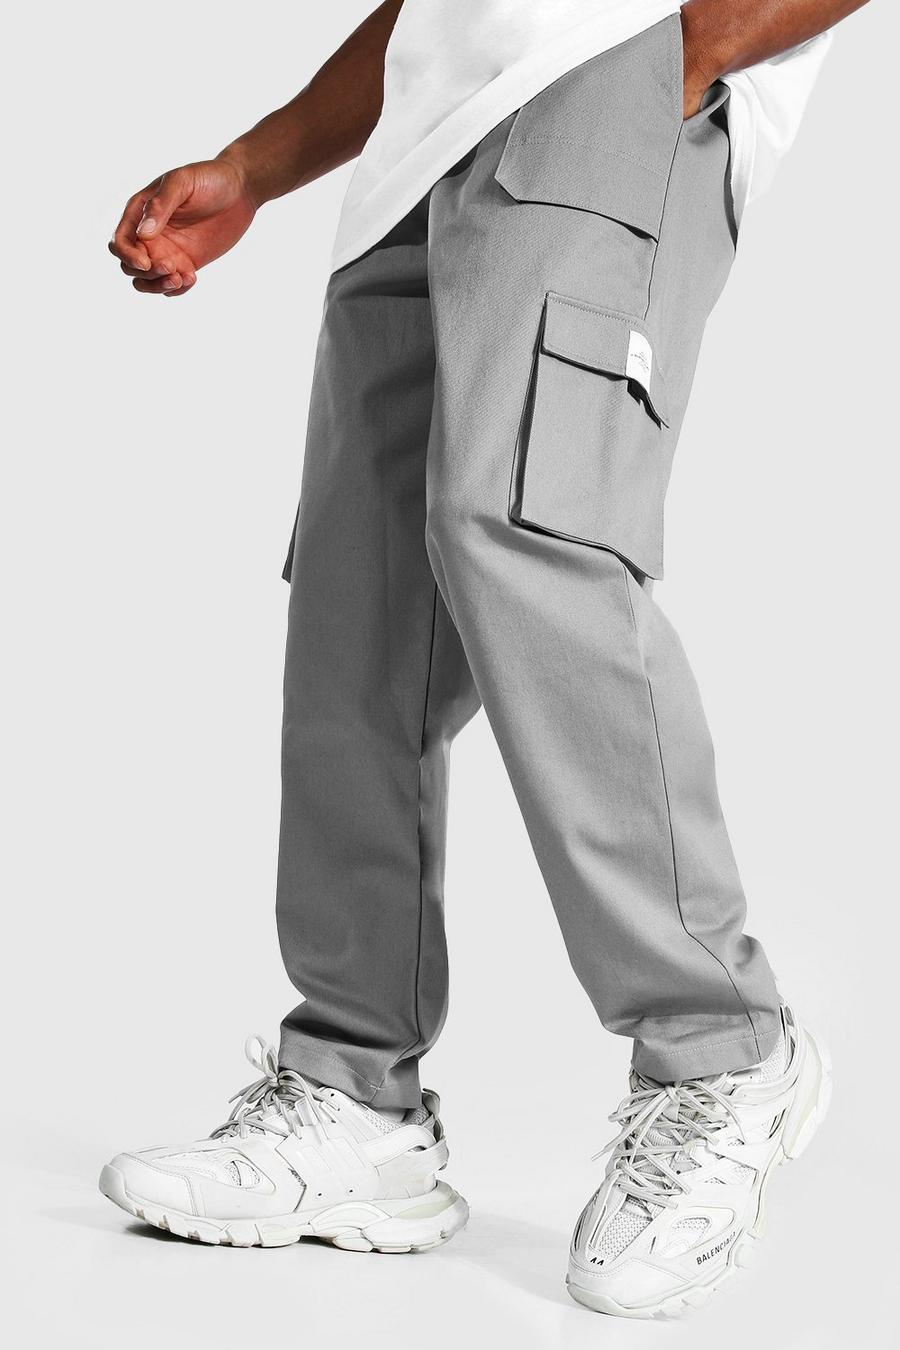 Slate gris מכנסי דגמ'ח מבד טוויל בגזרה משוחררת עם חגורה בחזית